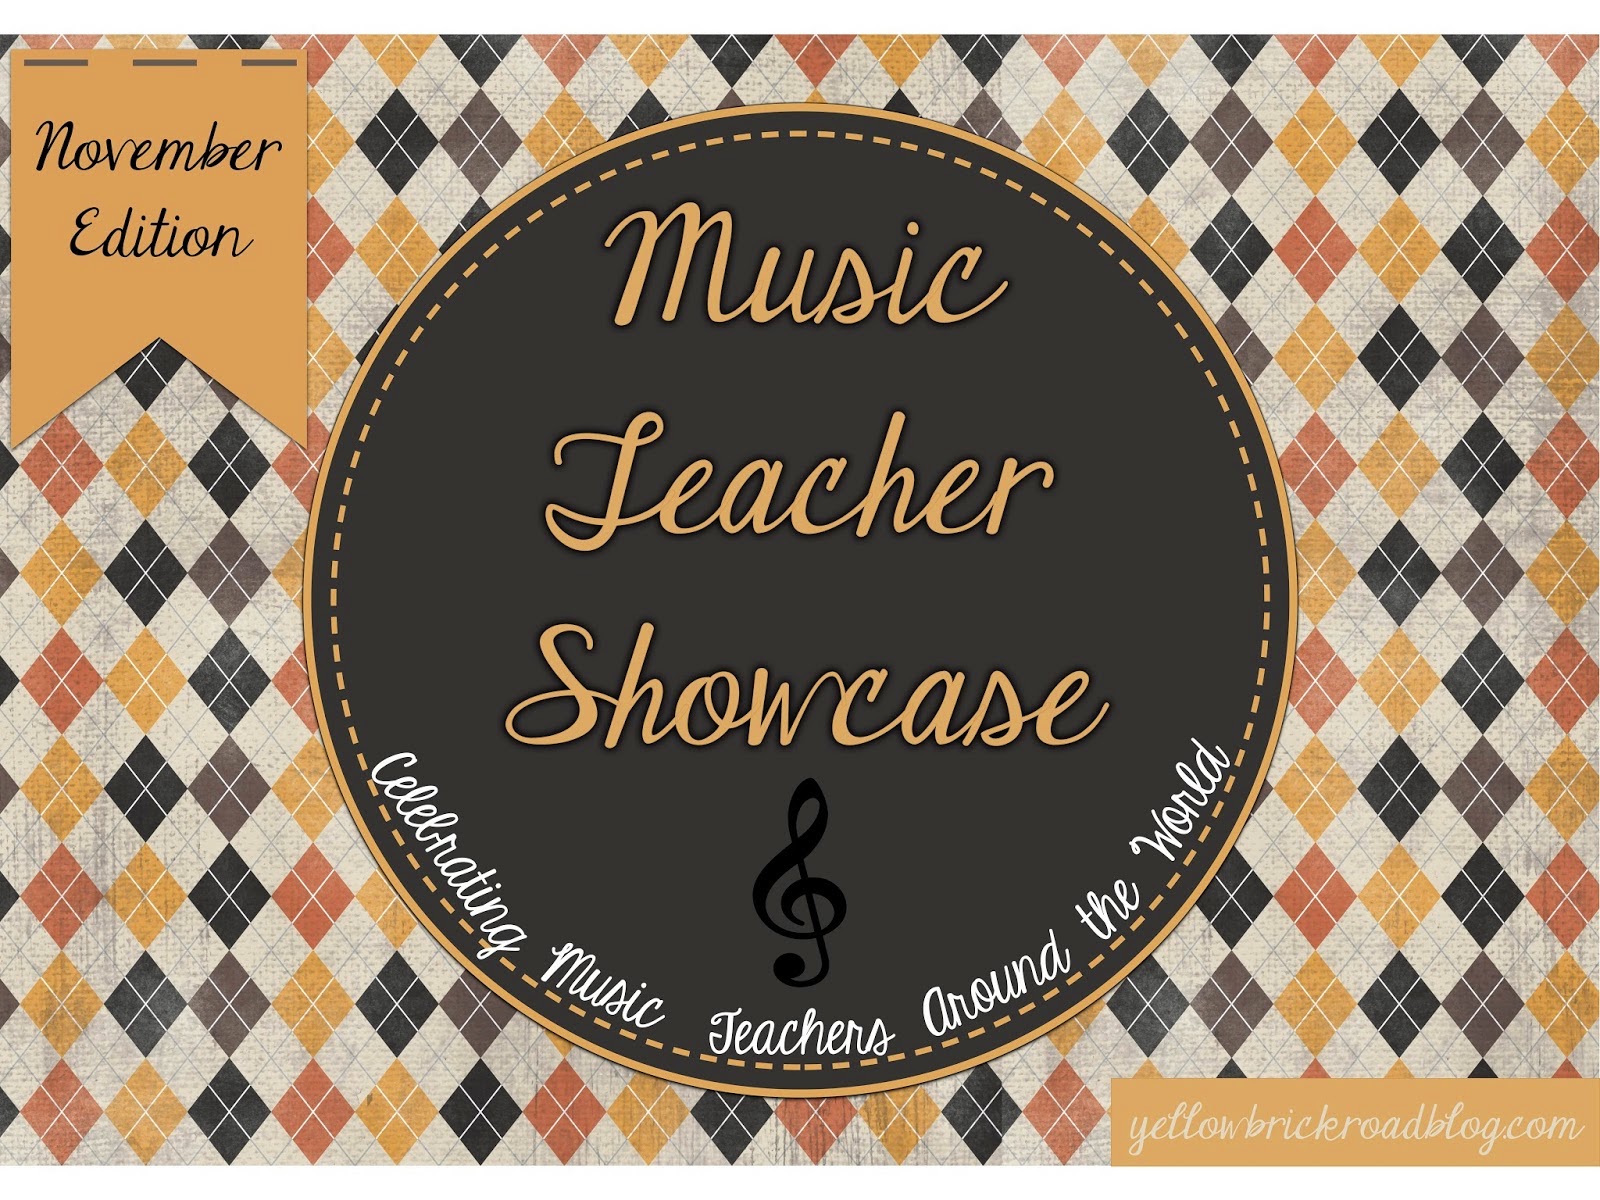 http://www.yellowbrickroadblog.com/2014/11/music-teacher-showcase-november.html